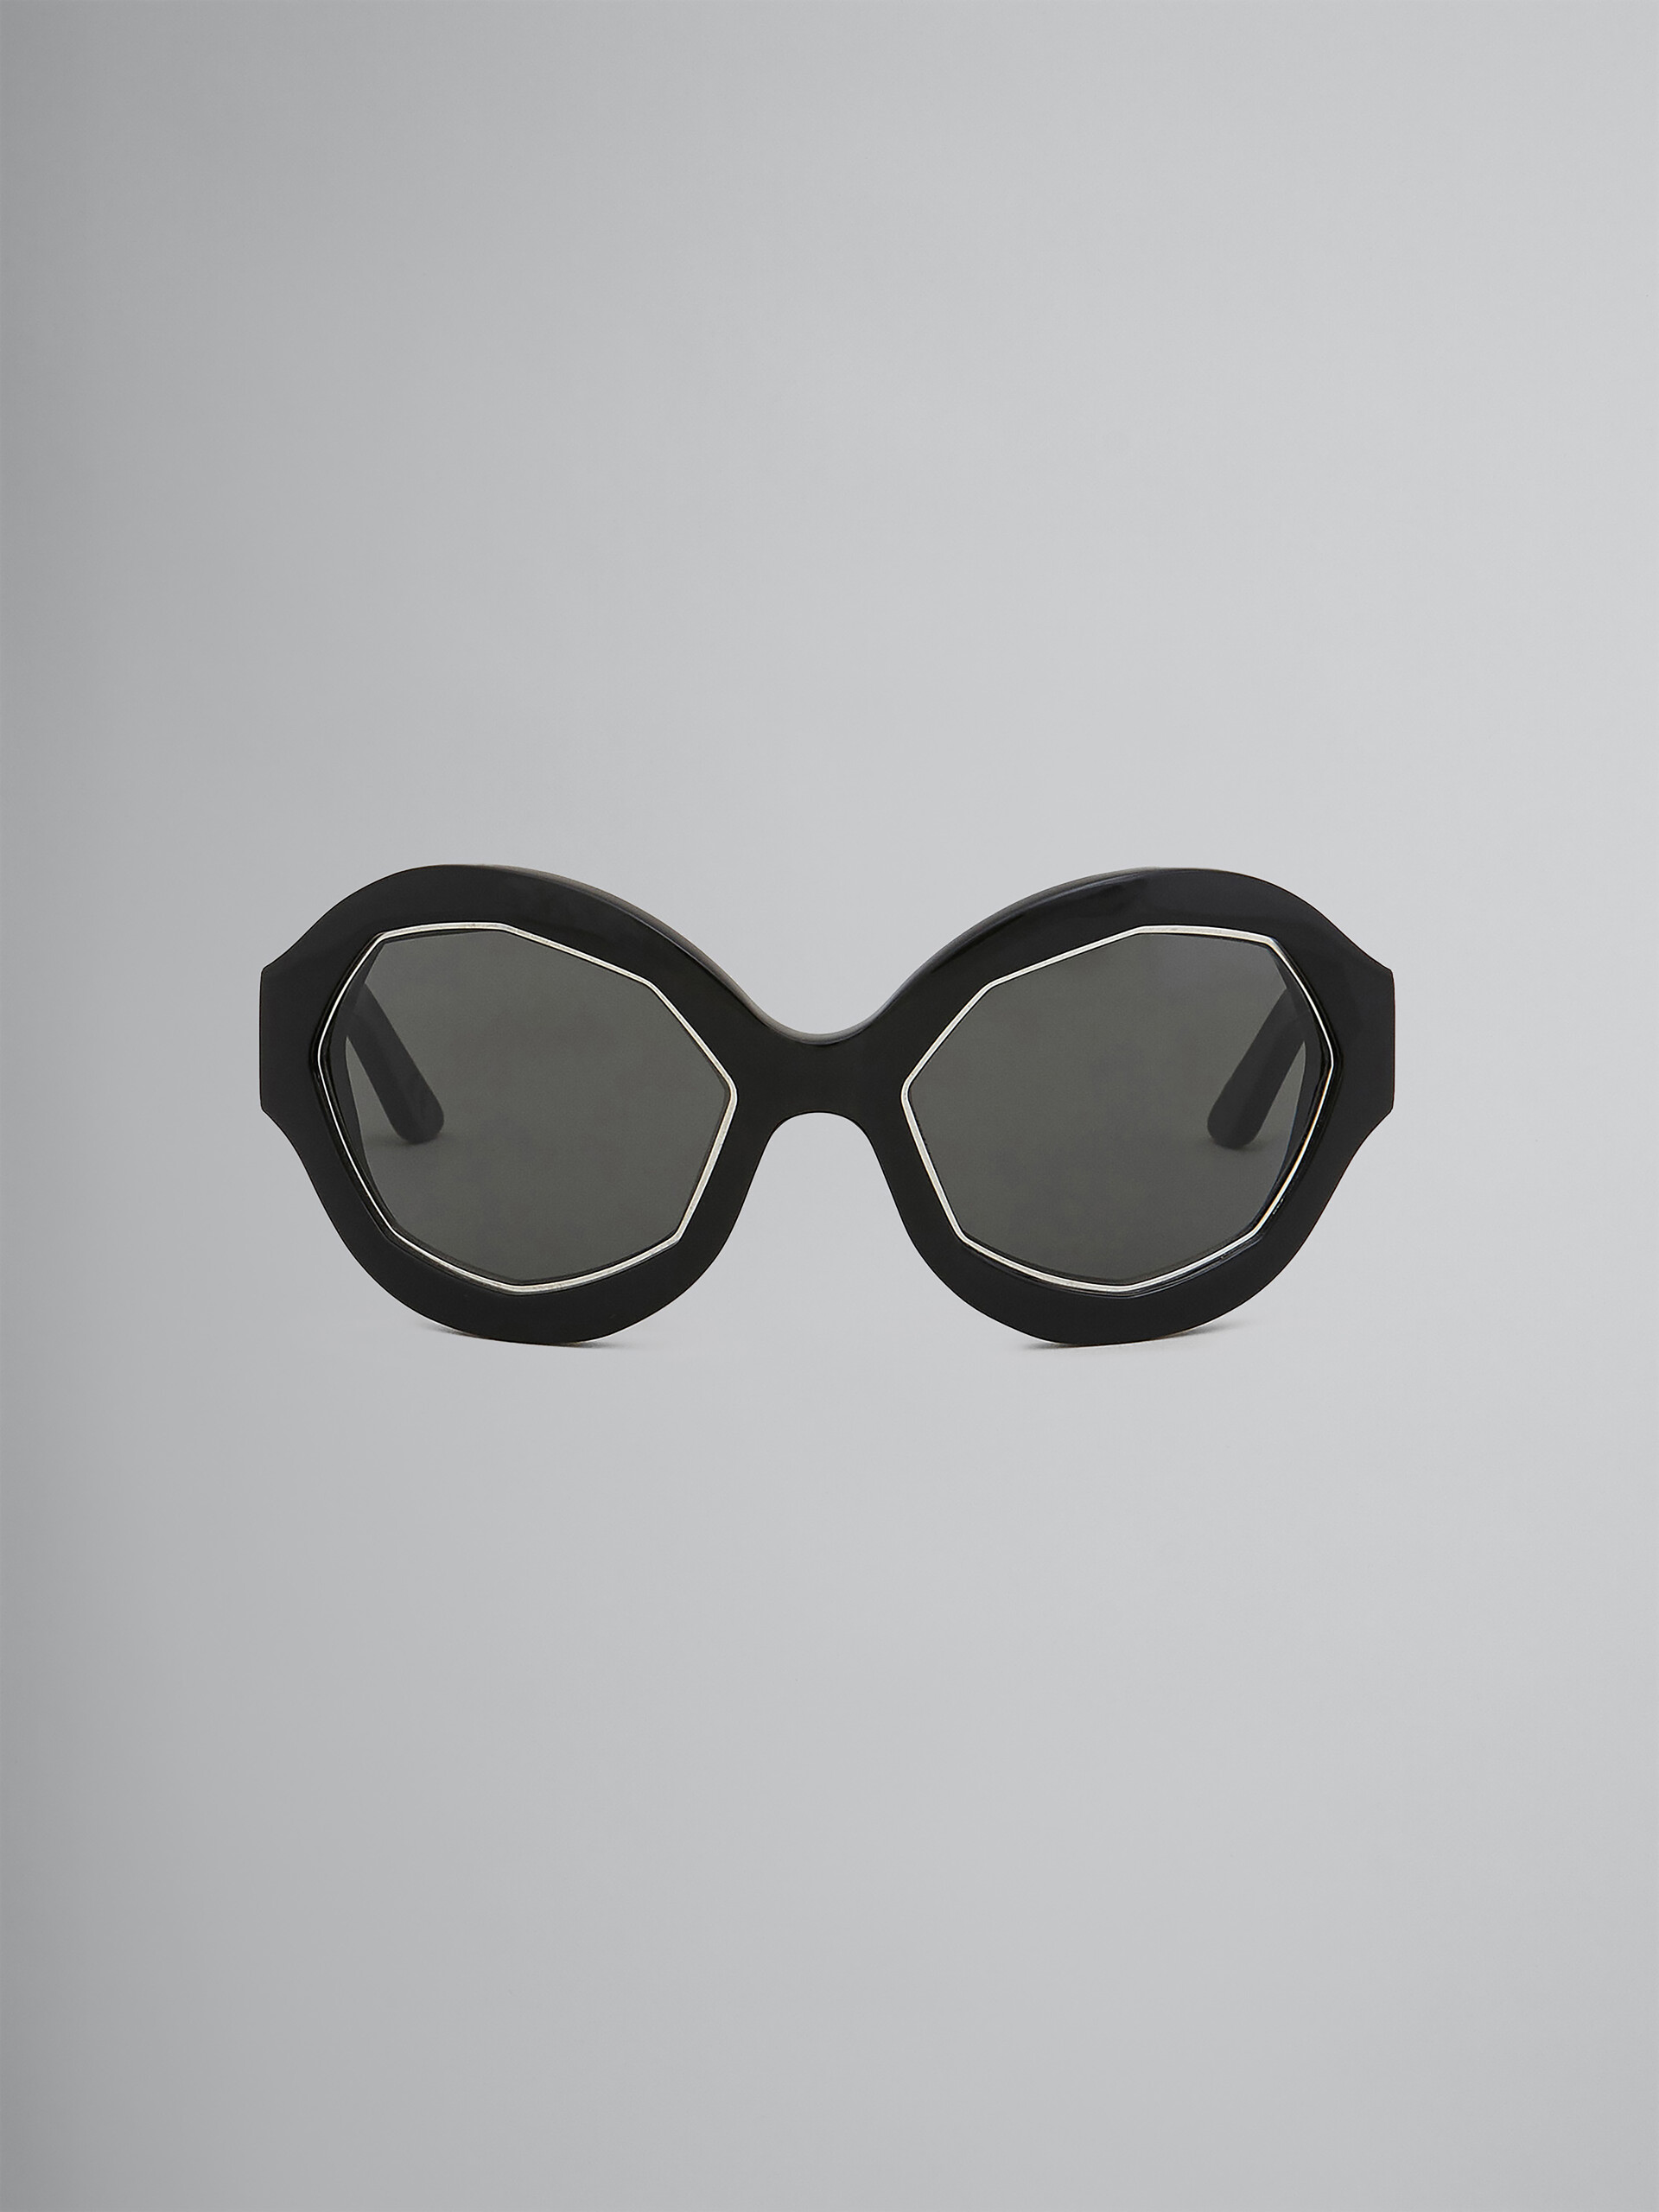 Gafas de sol CUMULUS CLOUD de acetato negro y nailon - óptica - Image 1